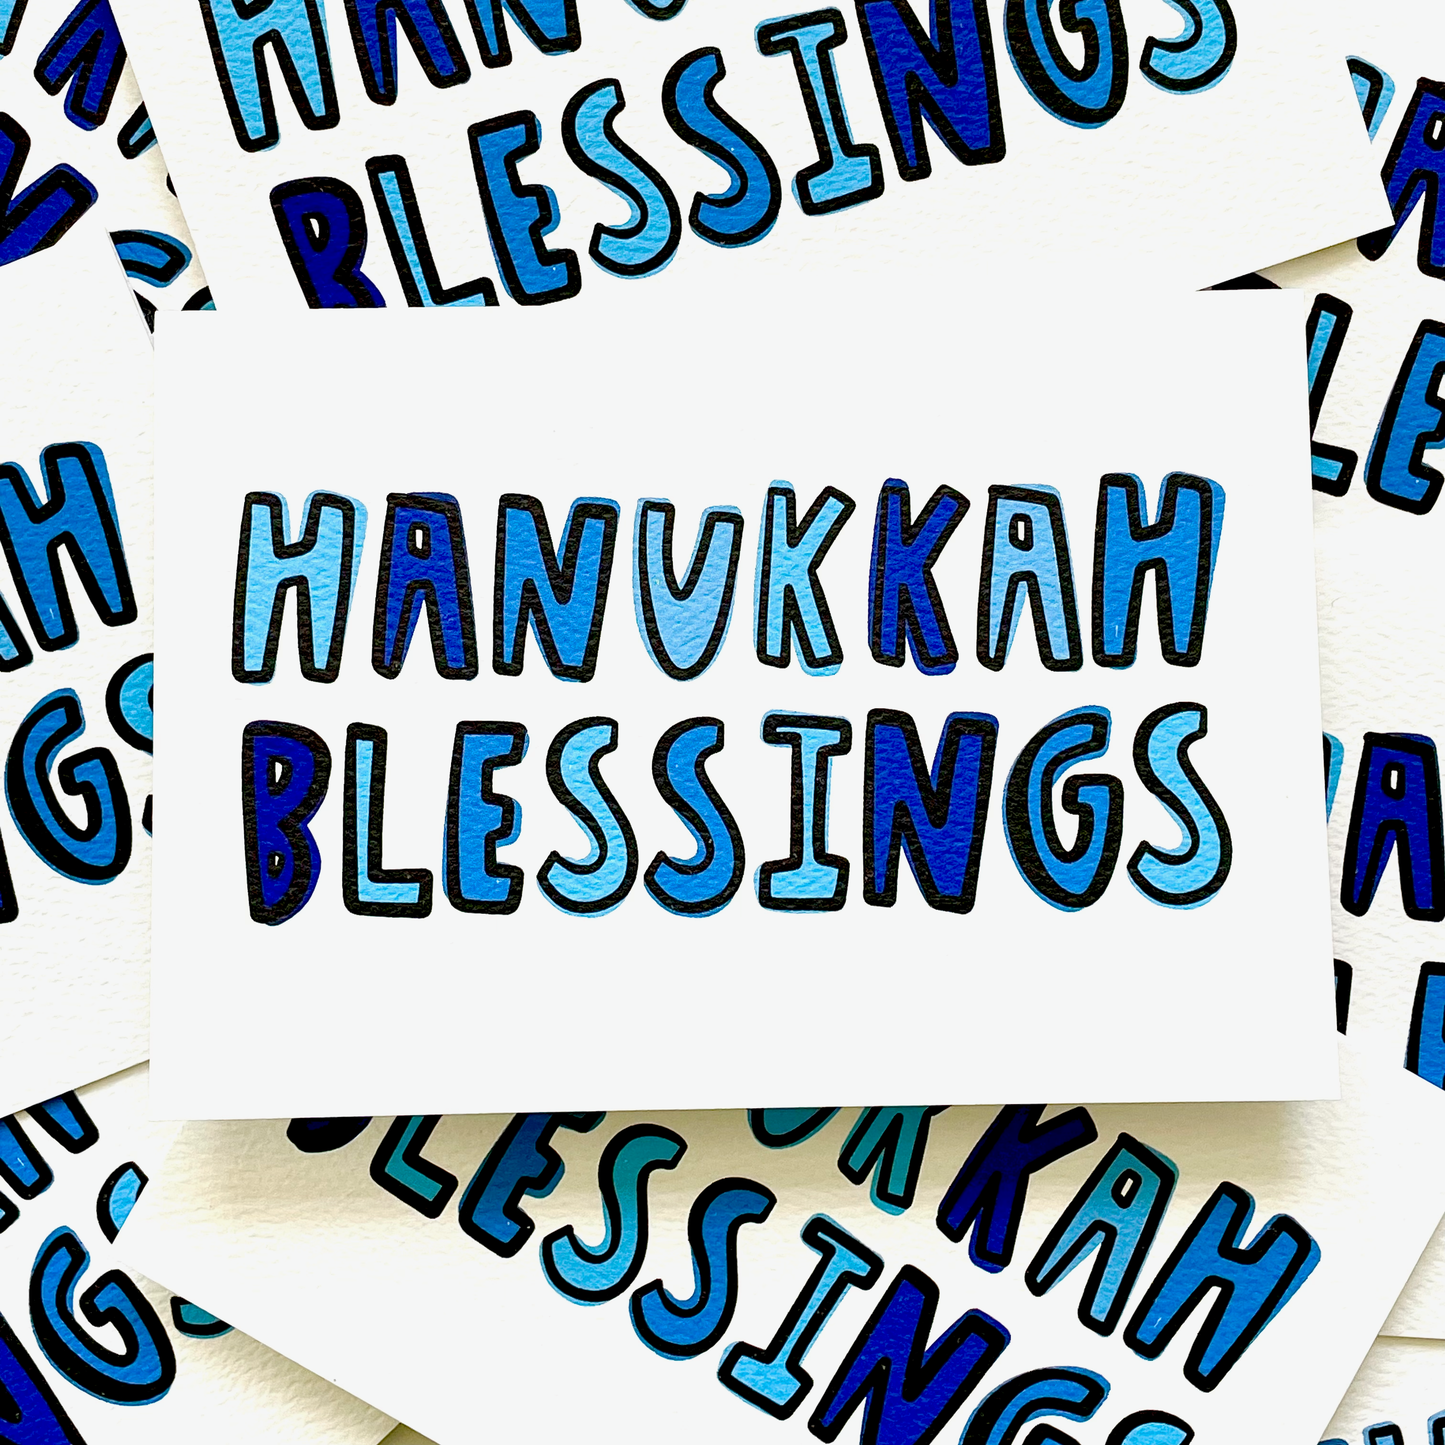 HANUKKAH BLESSINGS CARD